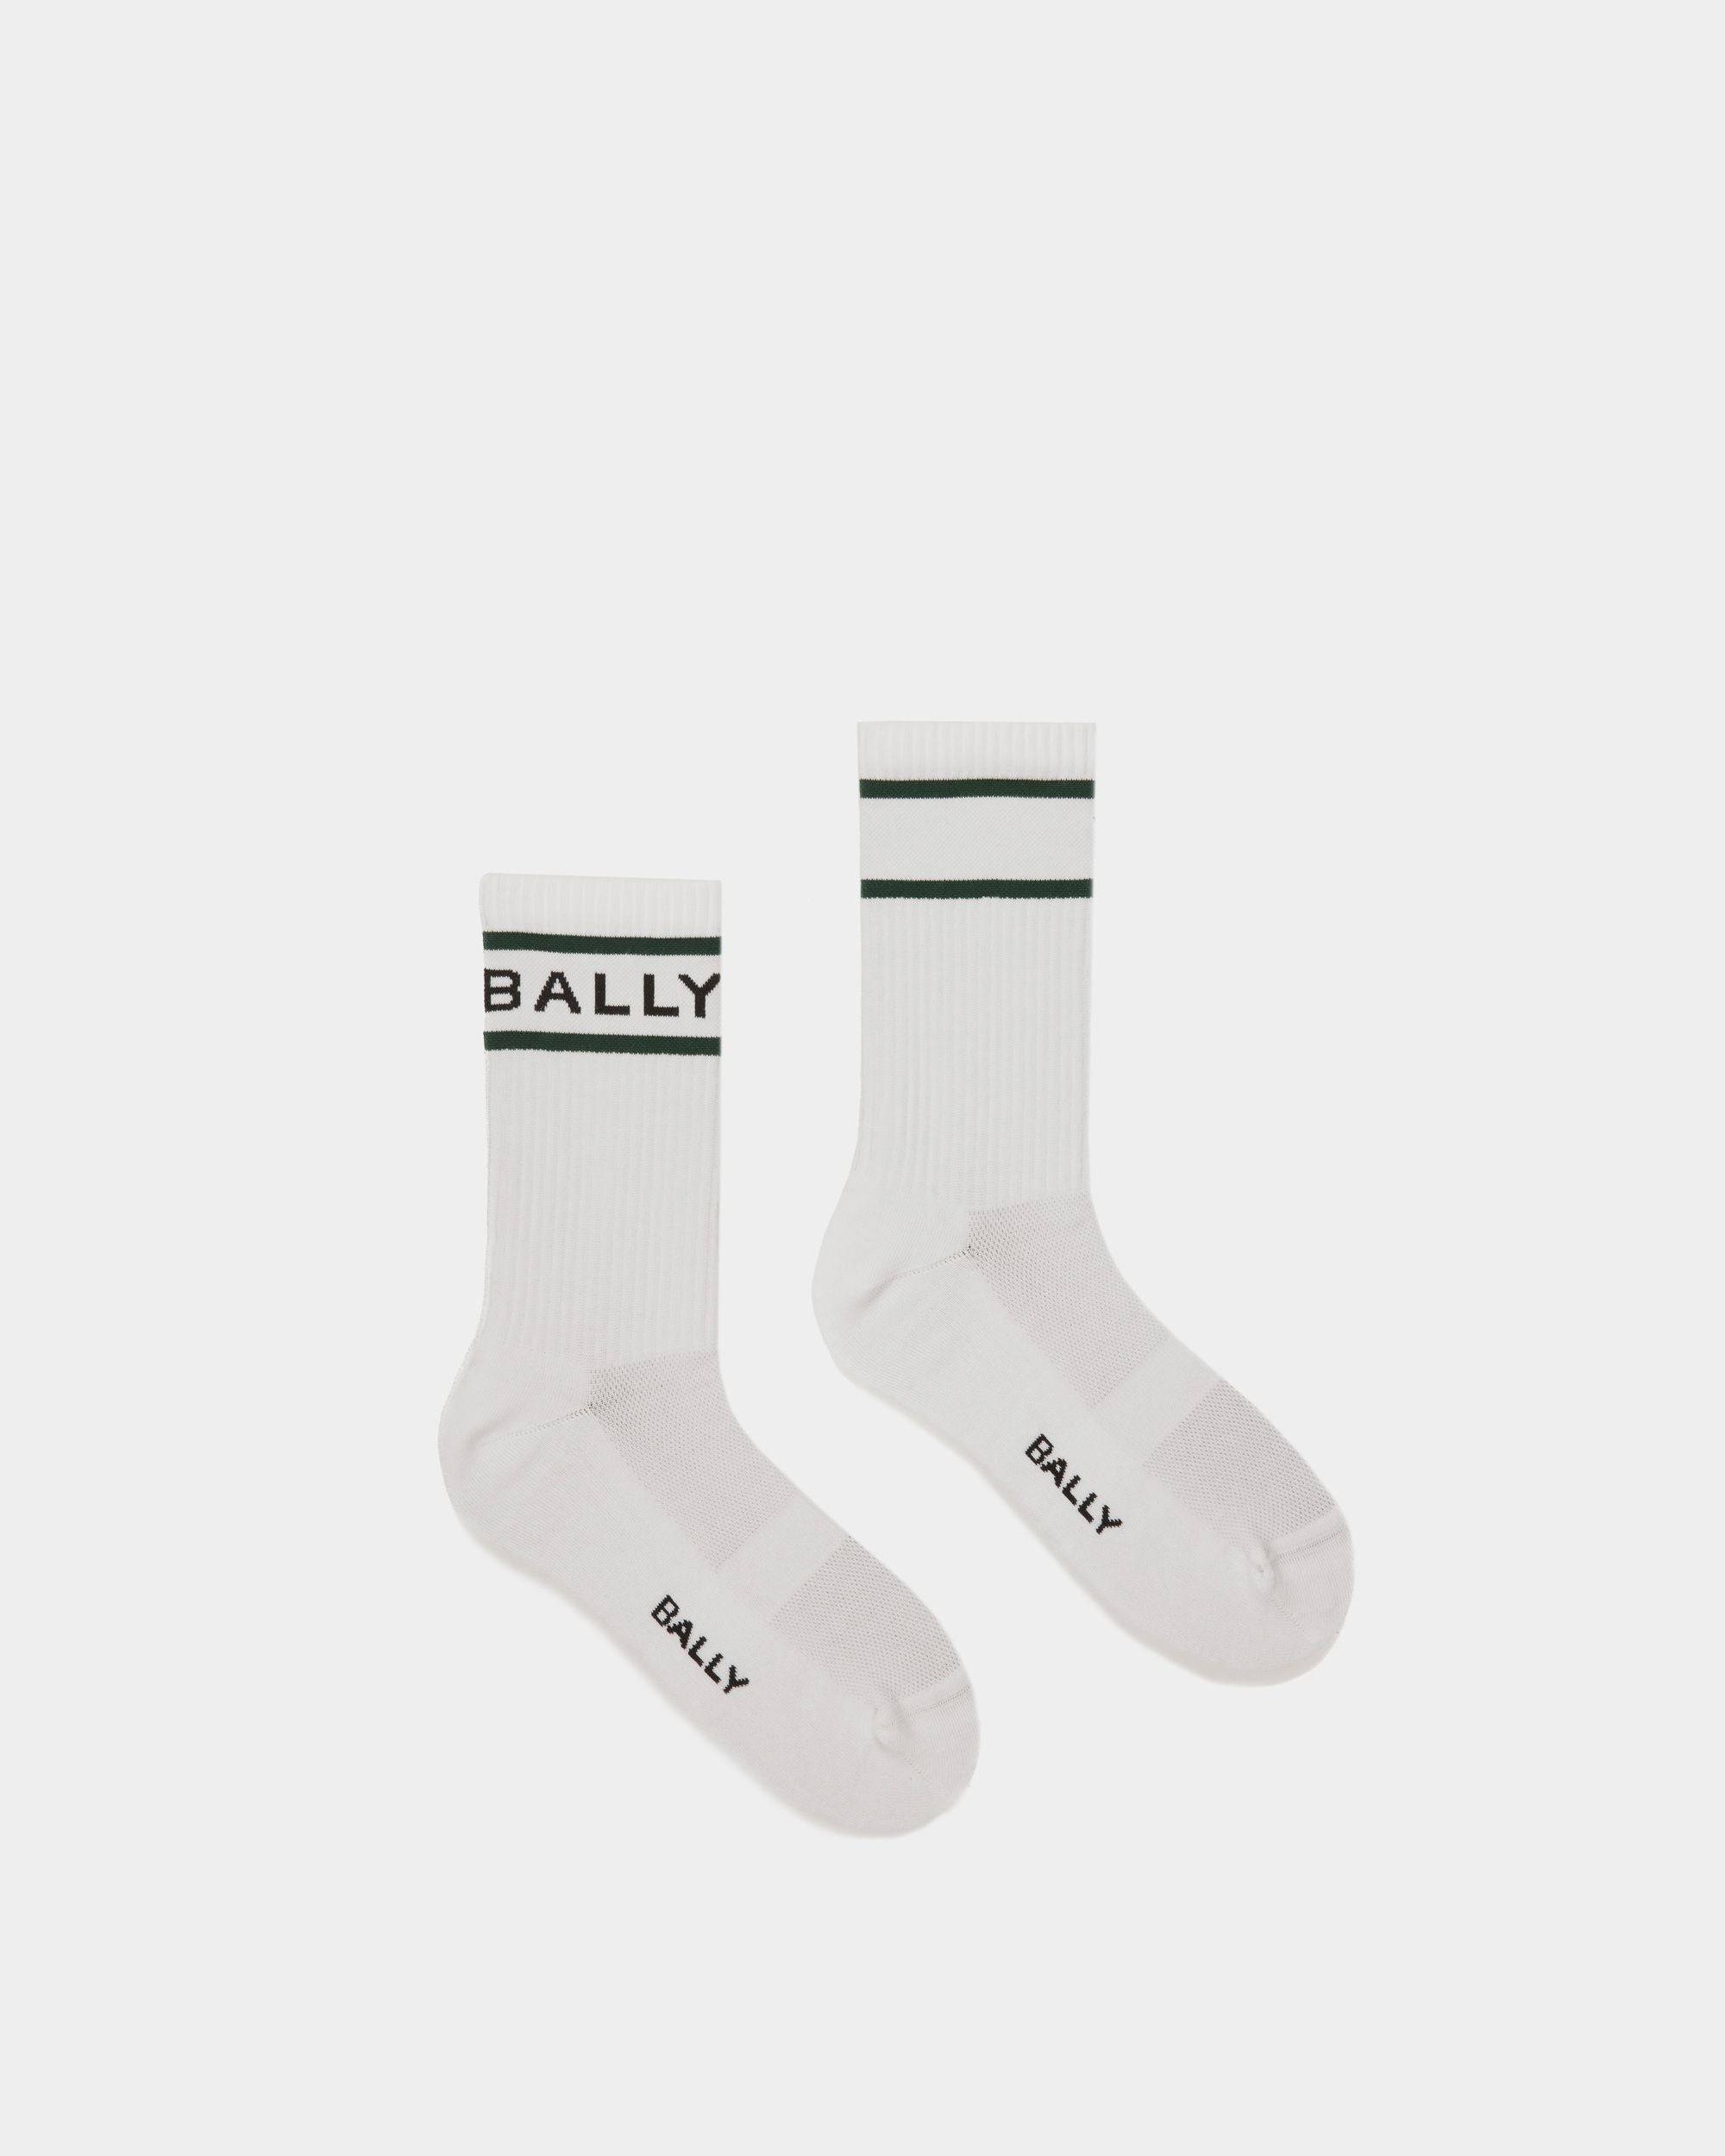 Bally Stripe Socken In Weiß und Grün - Herren - Bally